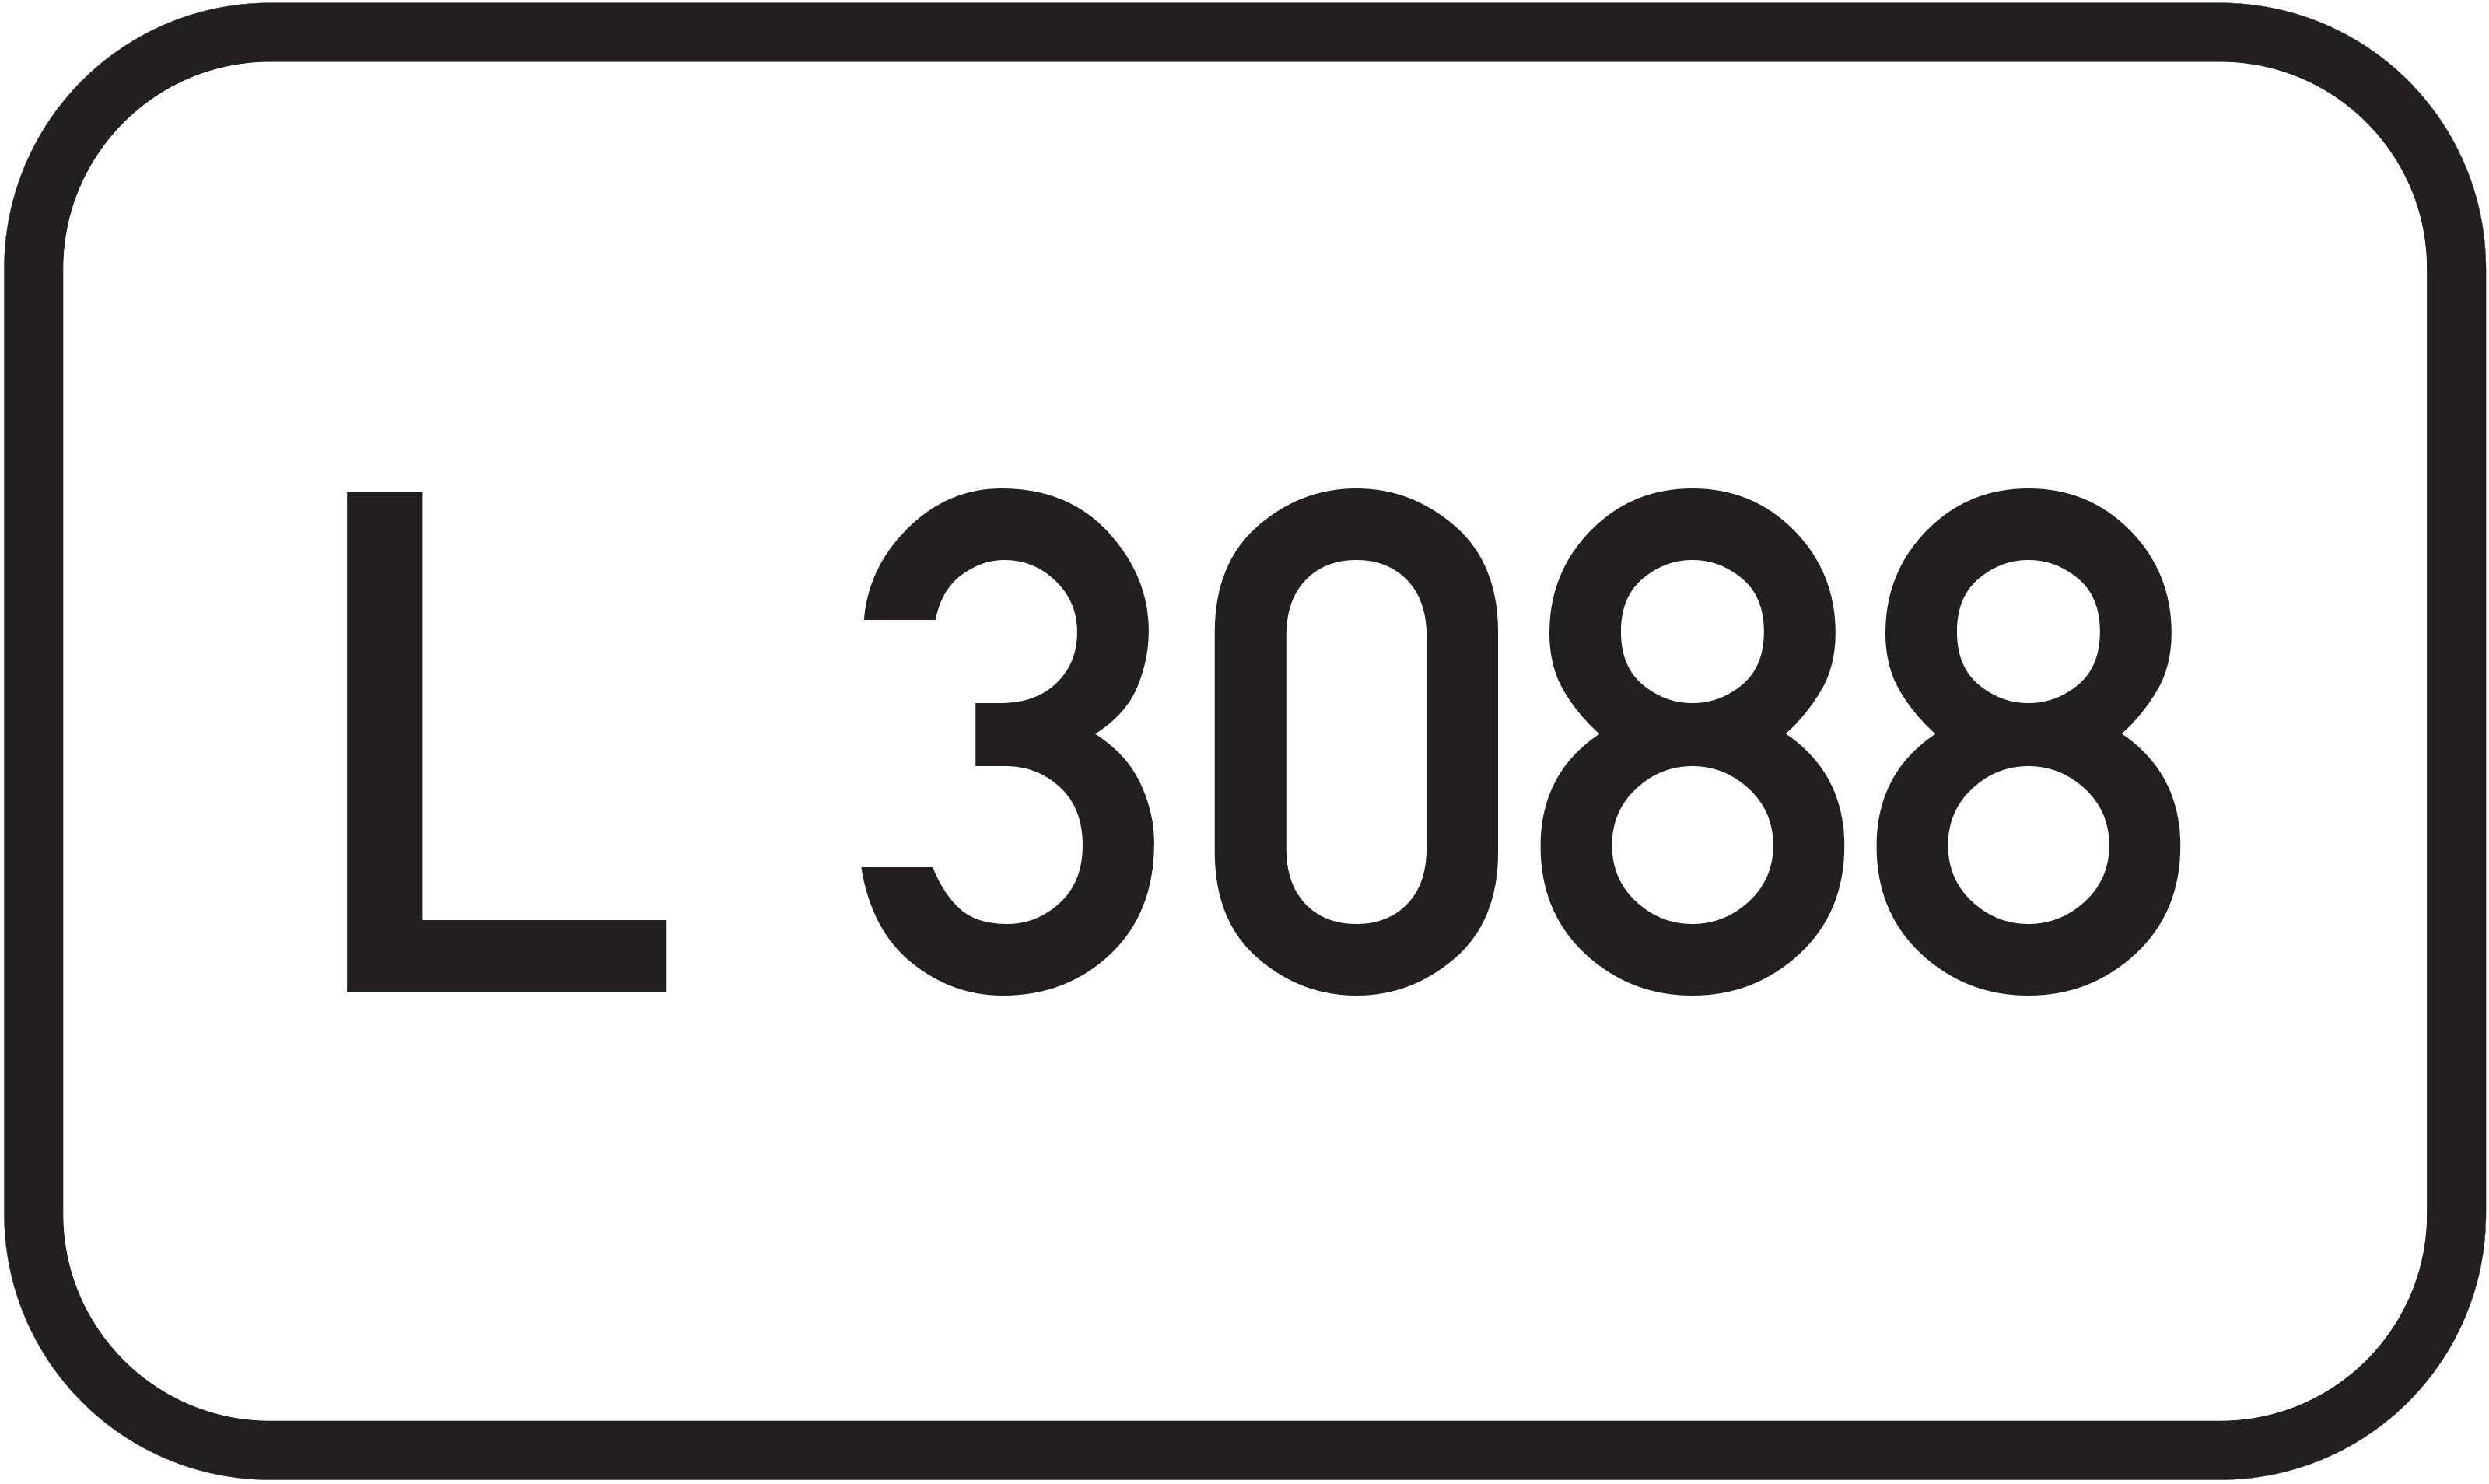 Landesstraße L 3088